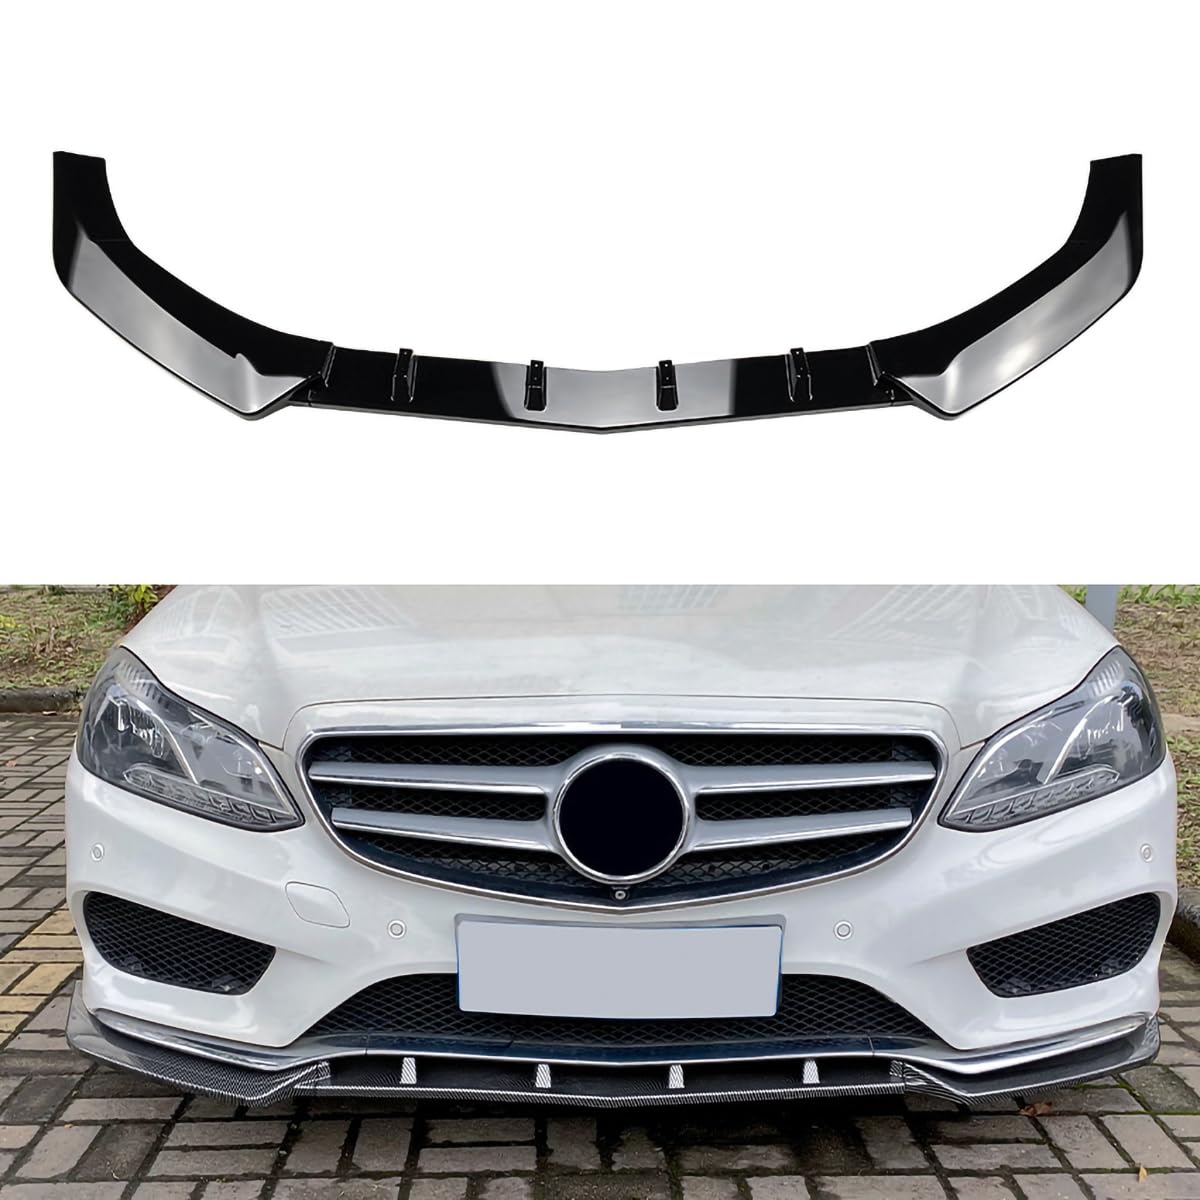 Auto-Frontstoßstangen-Lippenspoiler-Splitter für Mercedes Benz E Class W212 2013-2015 AMG, Frontschaufel-Bodykit-Spoiler,A-Black von Spulhc